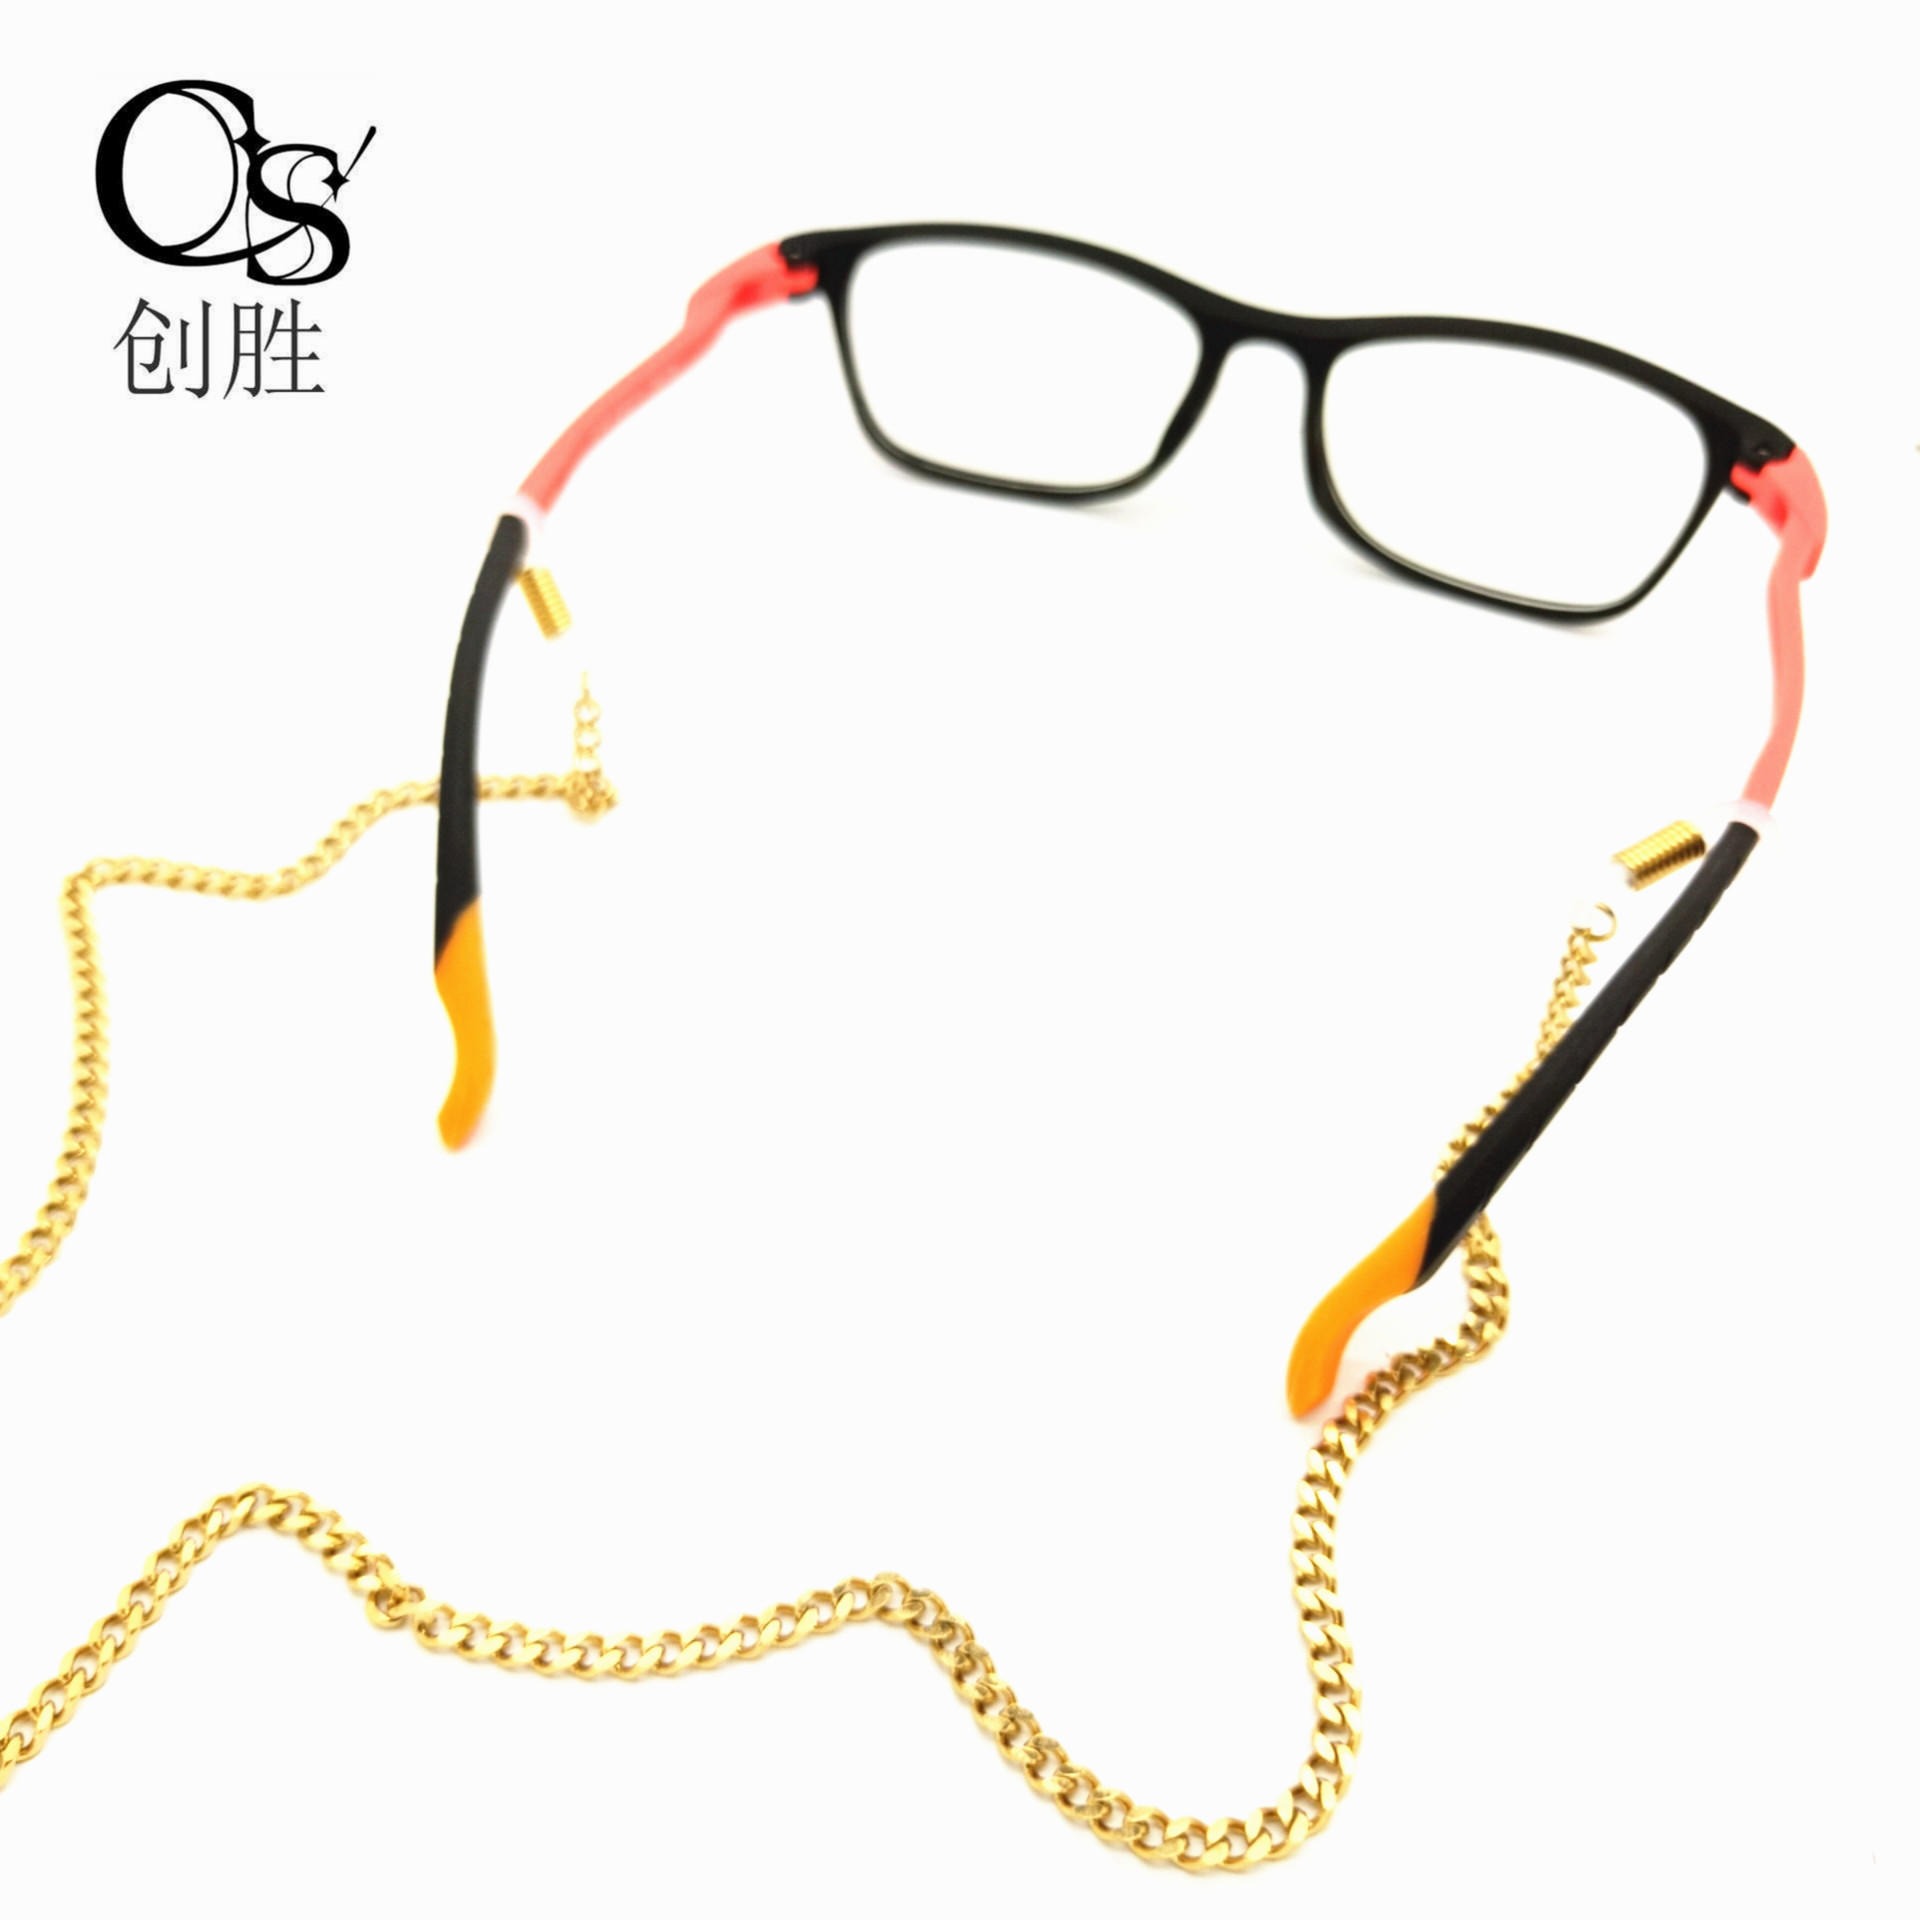 欧美新品眼镜链金属眼镜绳防滑链时尚太阳镜眼镜链防掉挂绳眼镜配件饰品厂家直销可私人订制8